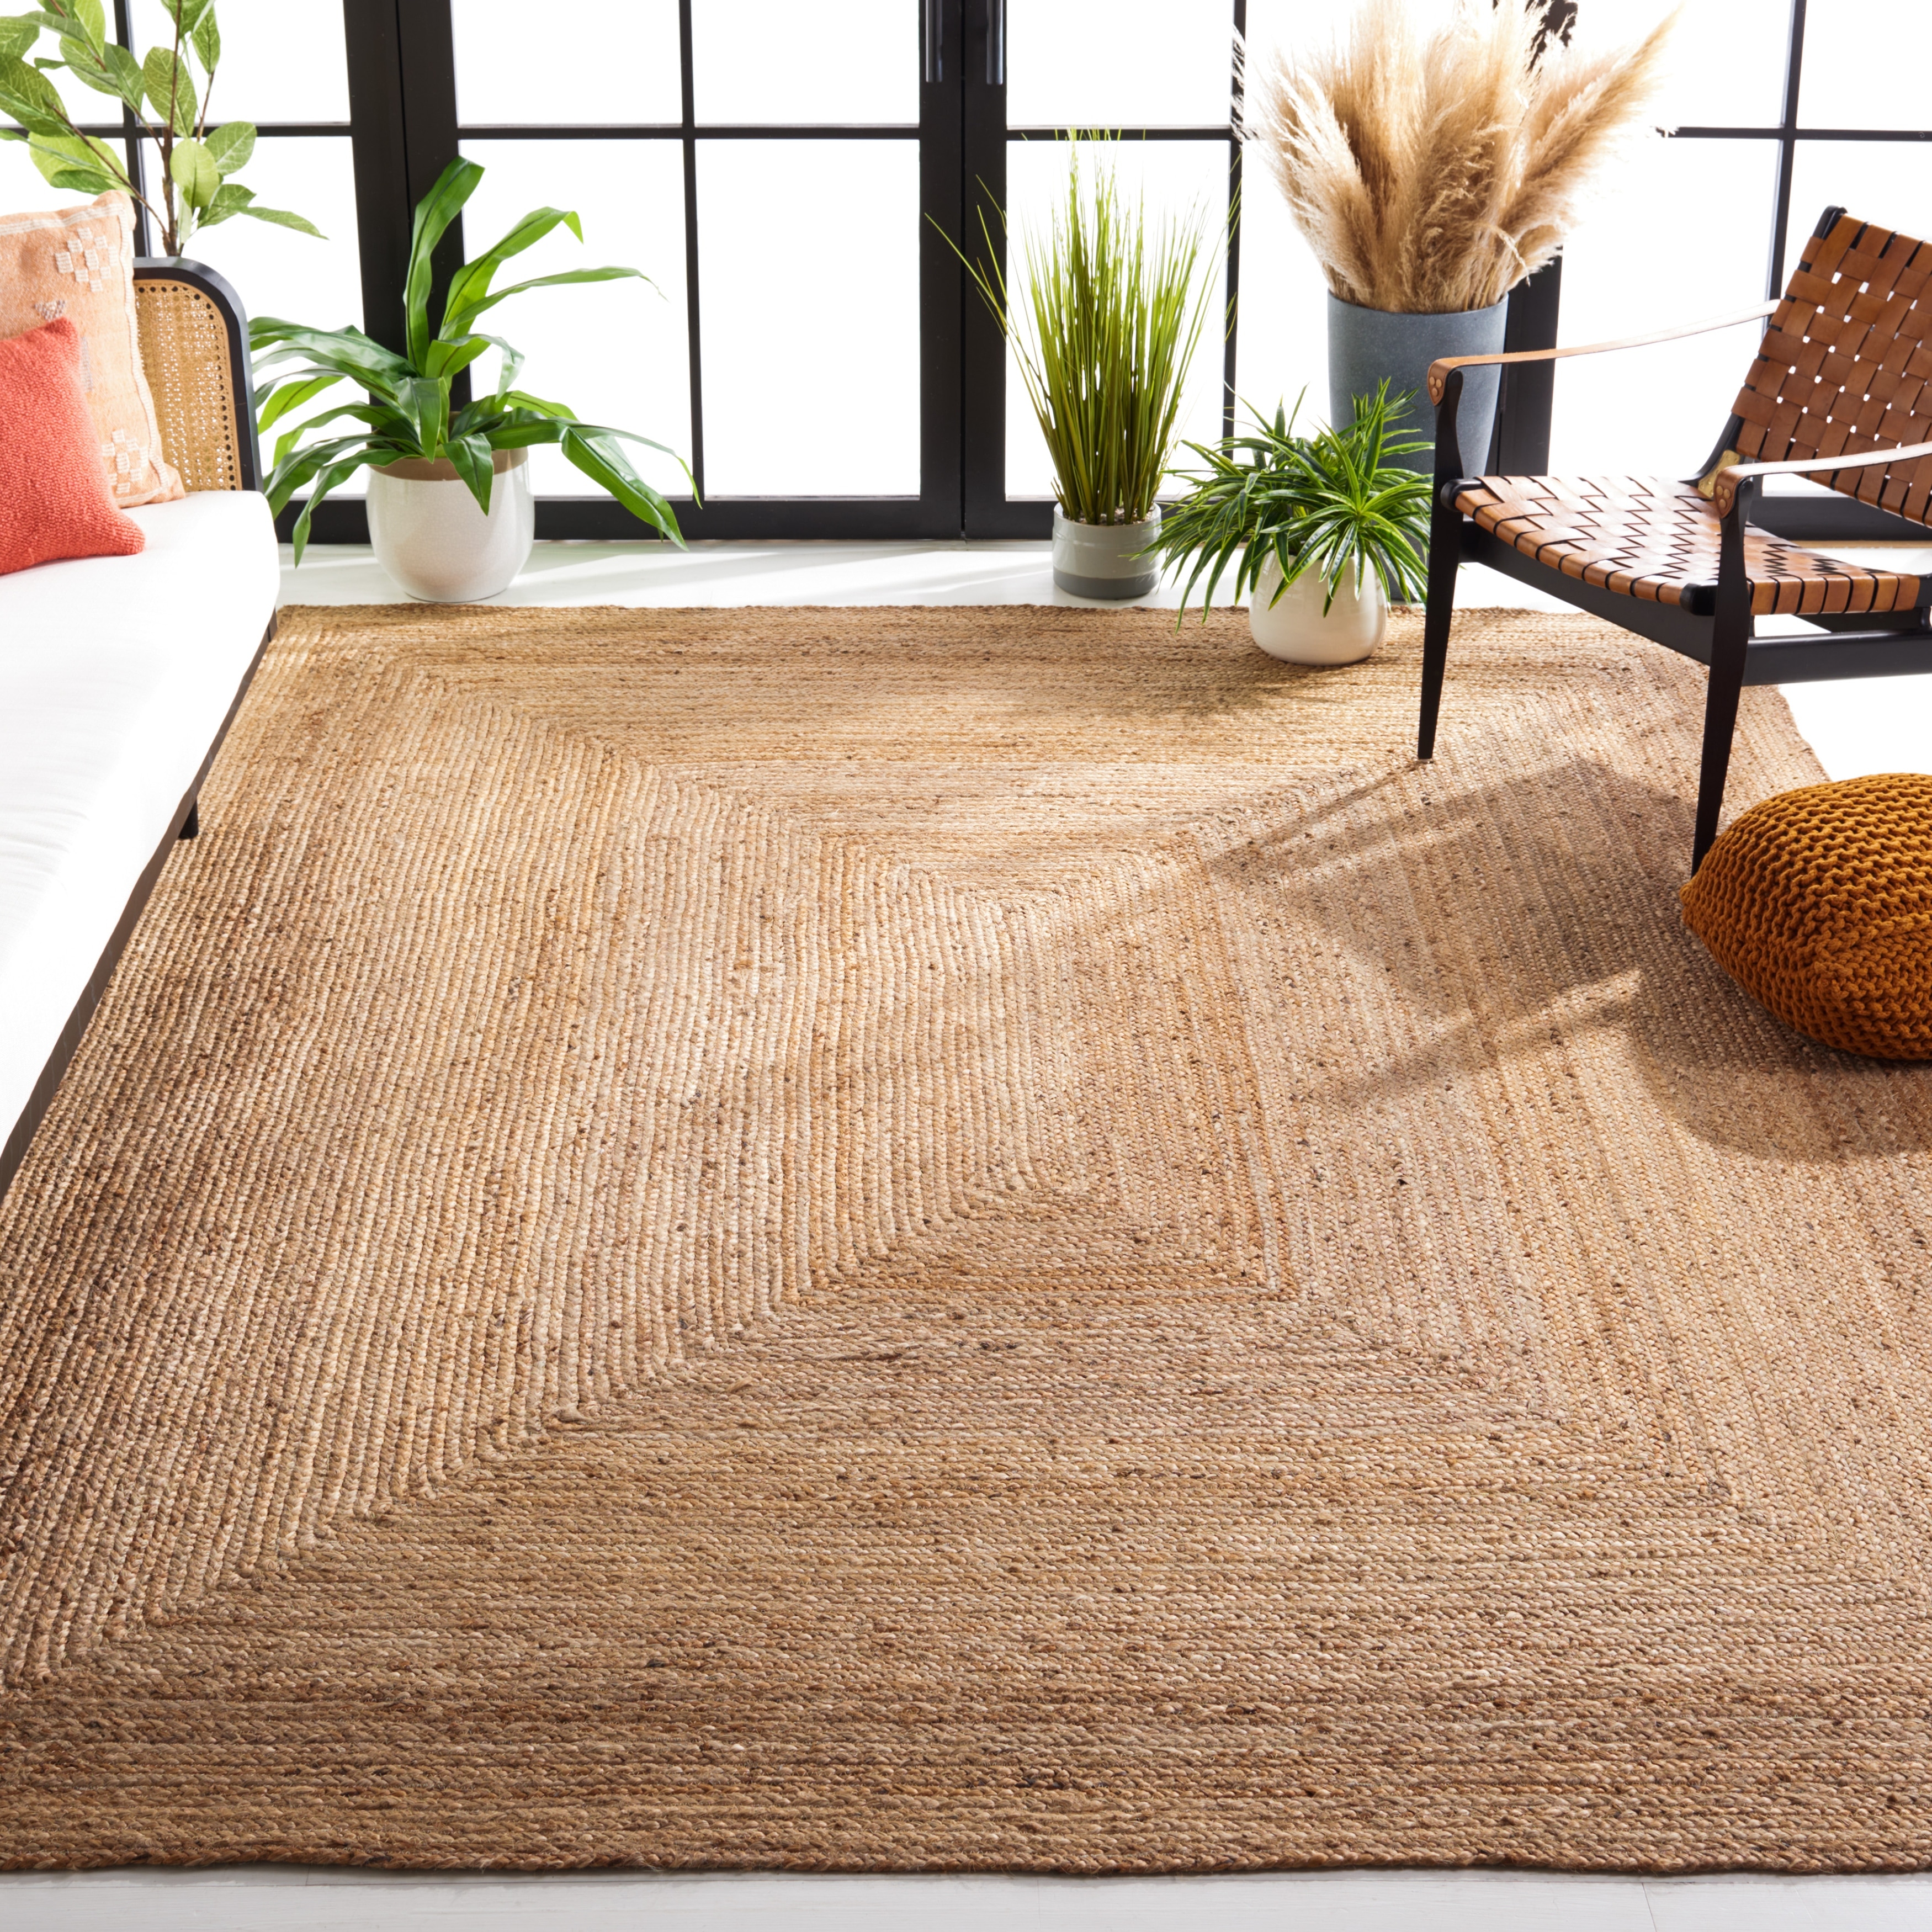 Natural Jute Carpet Handmade Oval Rug Mat Carpets for Living Room